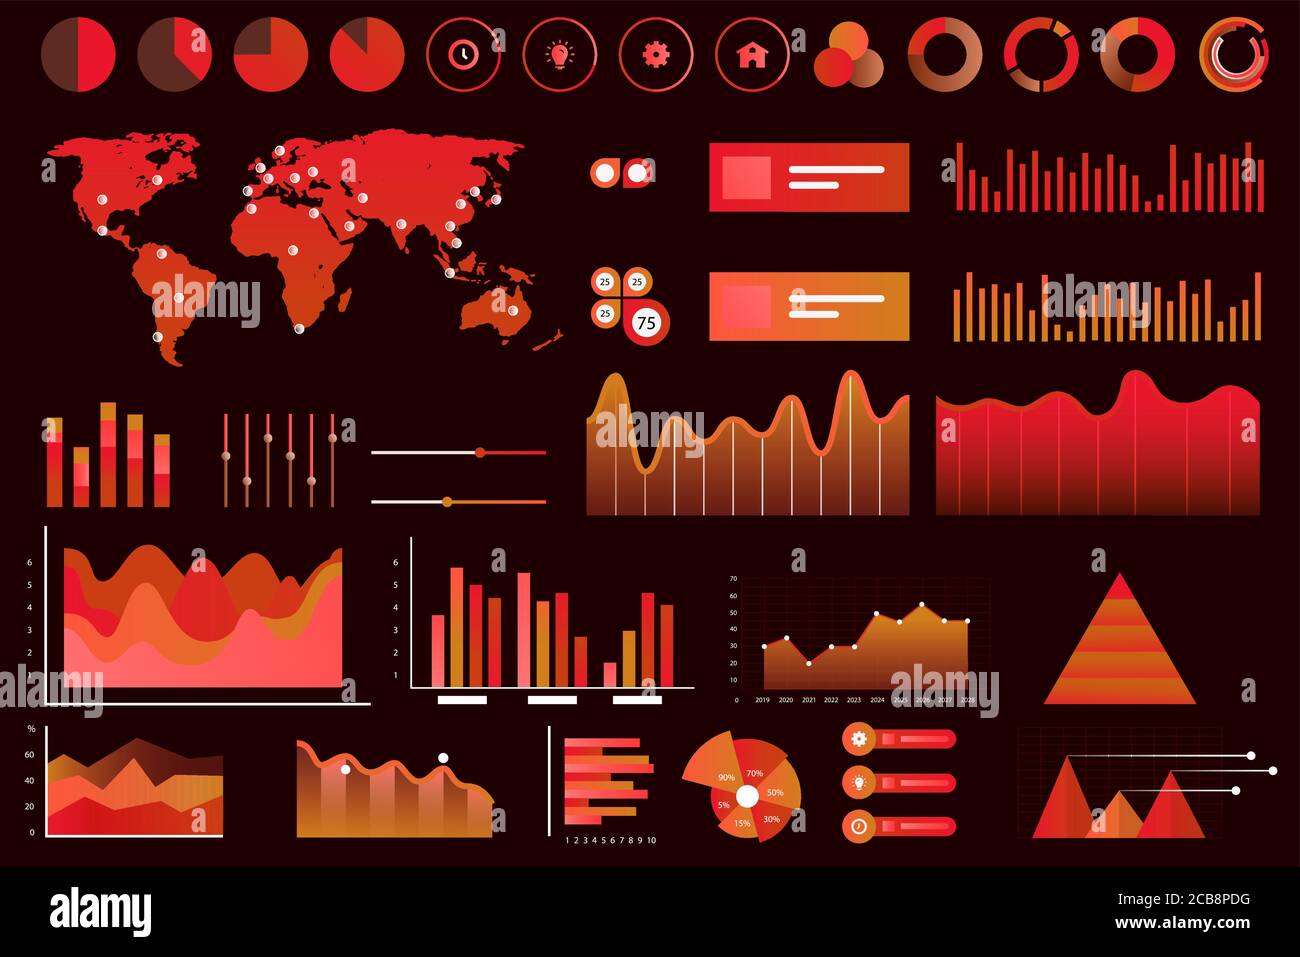 Bildschirm mit verschiedenen Vektorgrafiken, Diagrammen und Diagrammen. Rote Neonfarbe futuristische ui Infografiken auf dunklem Hintergrund. High-Tech-Panel, interaktive Grafik Vektor Illustration Stock Vektor